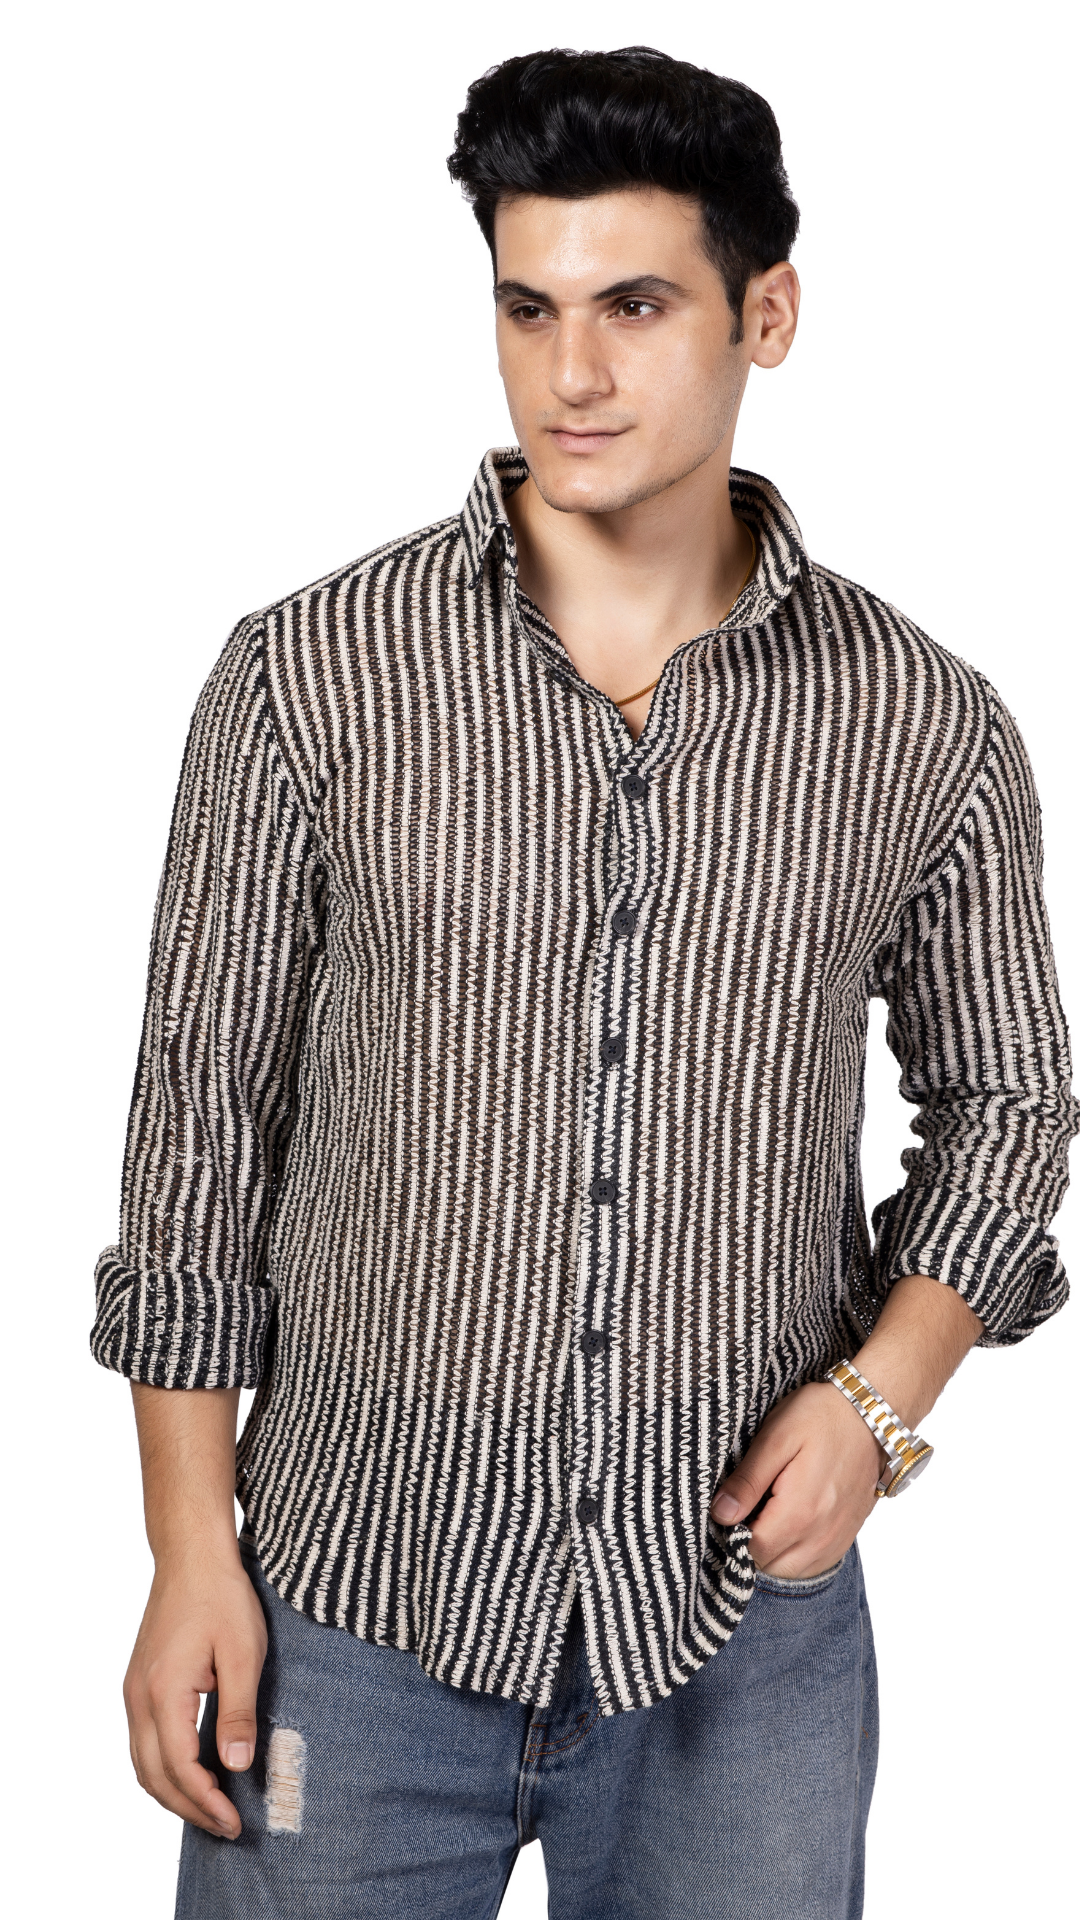 Small Stripe Black And White Crochet Shirt Full Sleeves